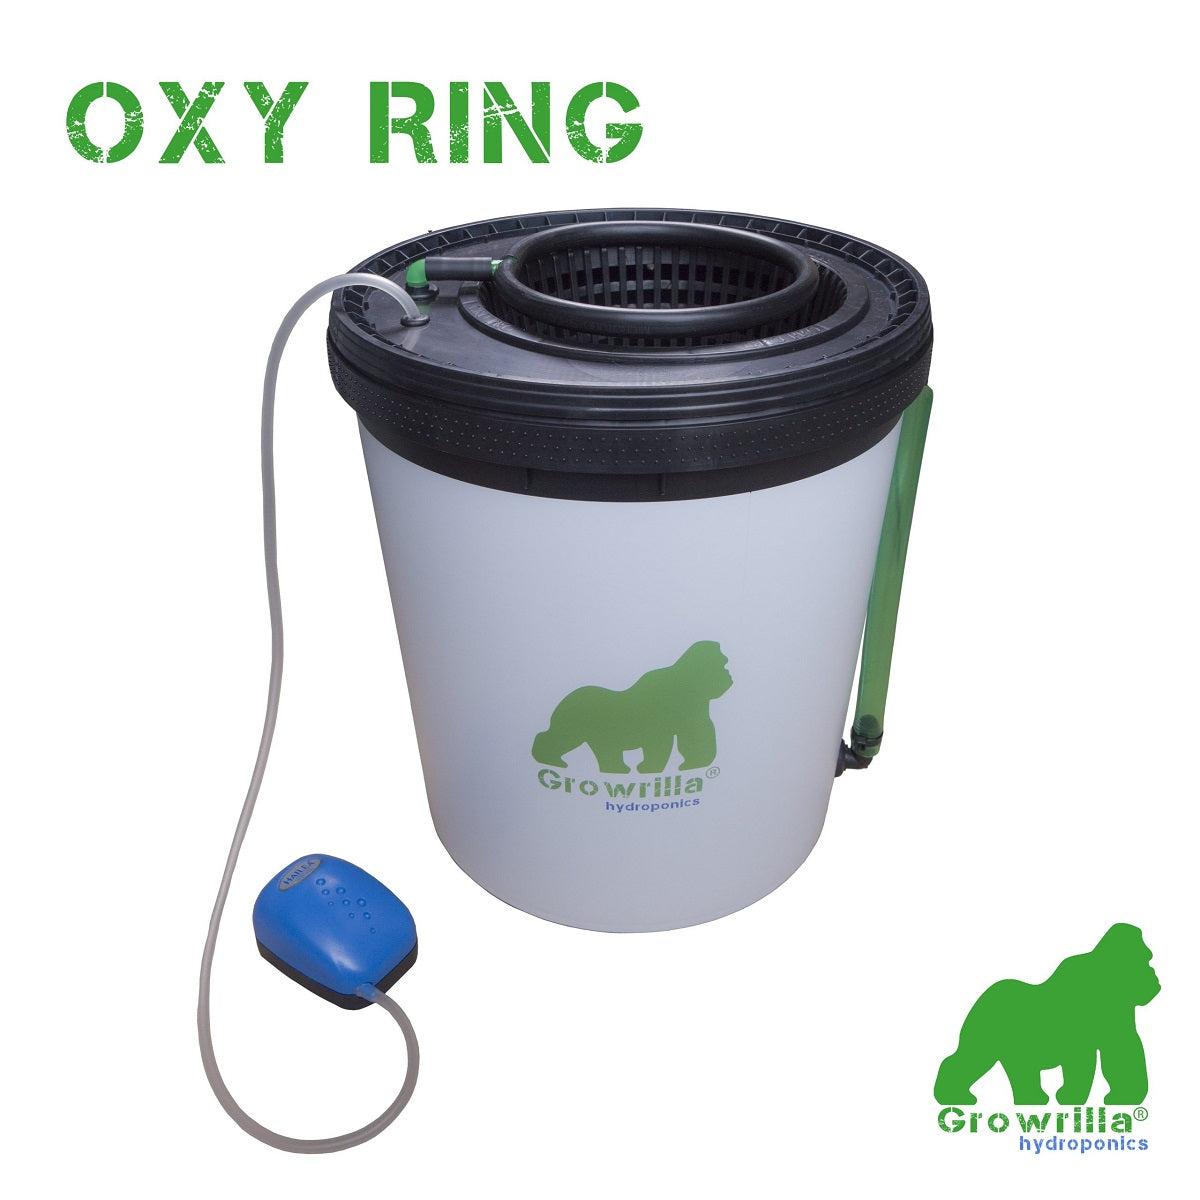 Système de culture Growrilla Oxy Ring hydroponique